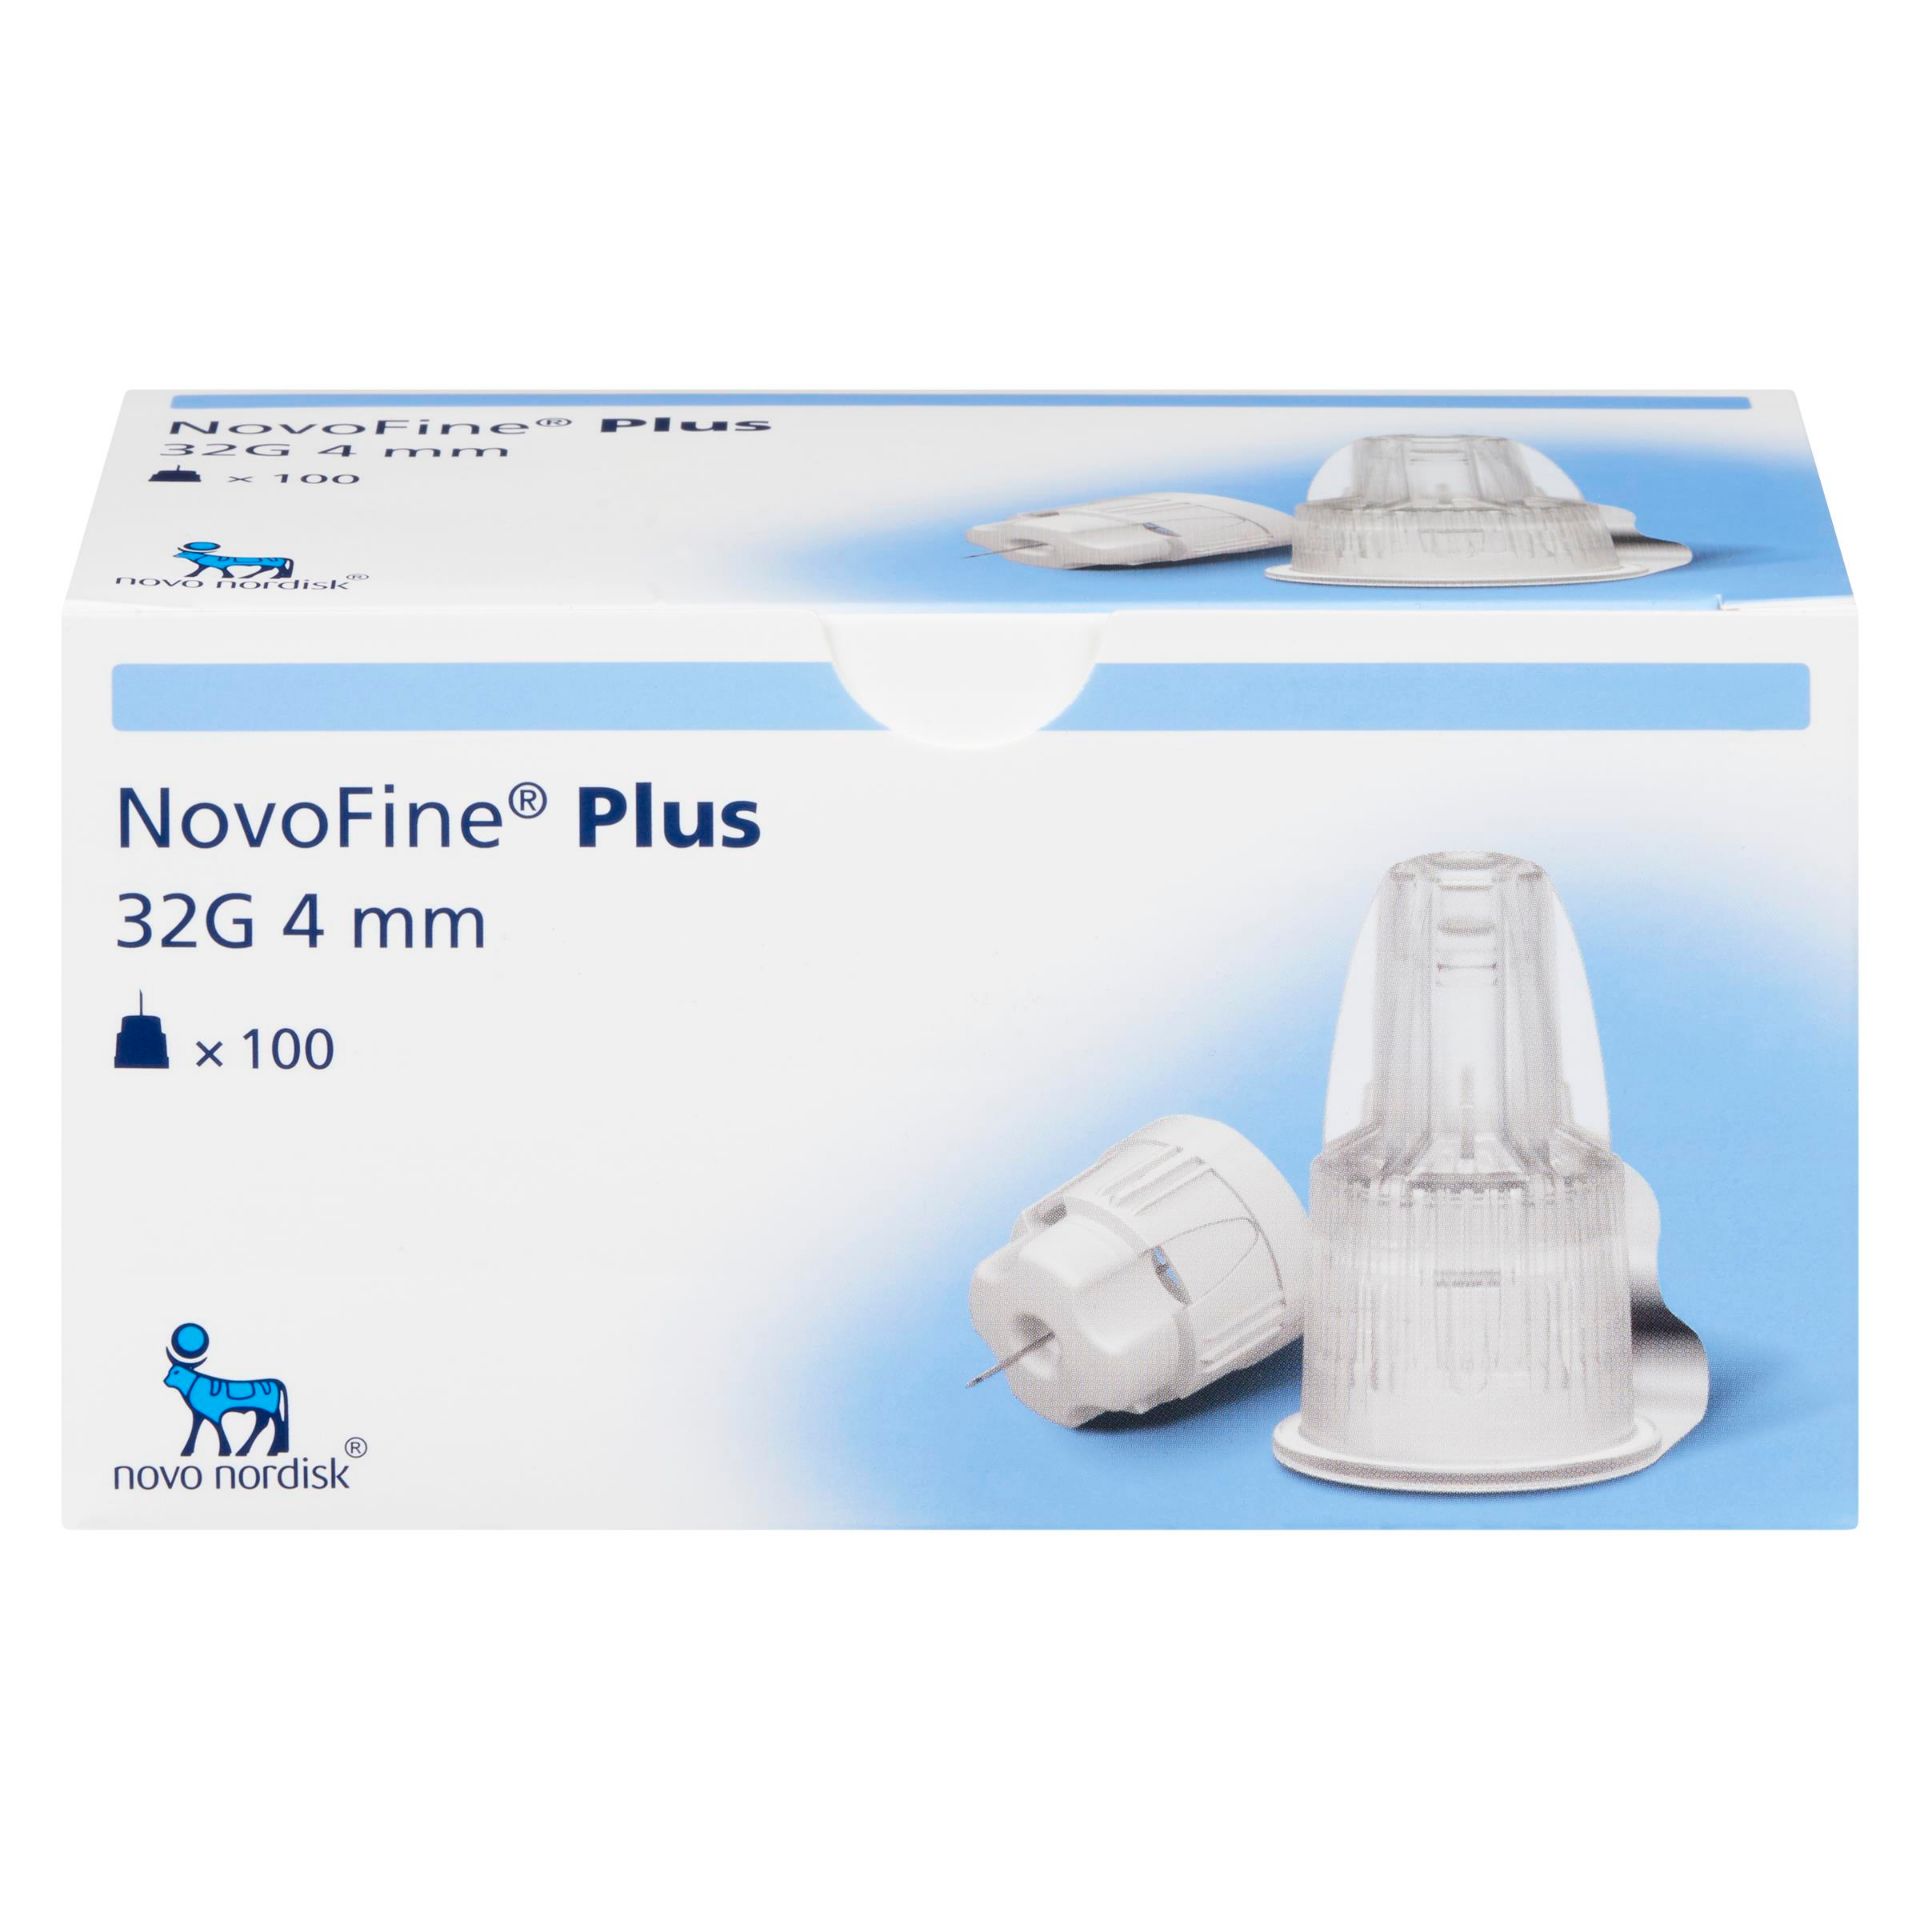 Igła insulinowa NovoFine Plus 32g*4 mm, 100 sztuk - Serwis